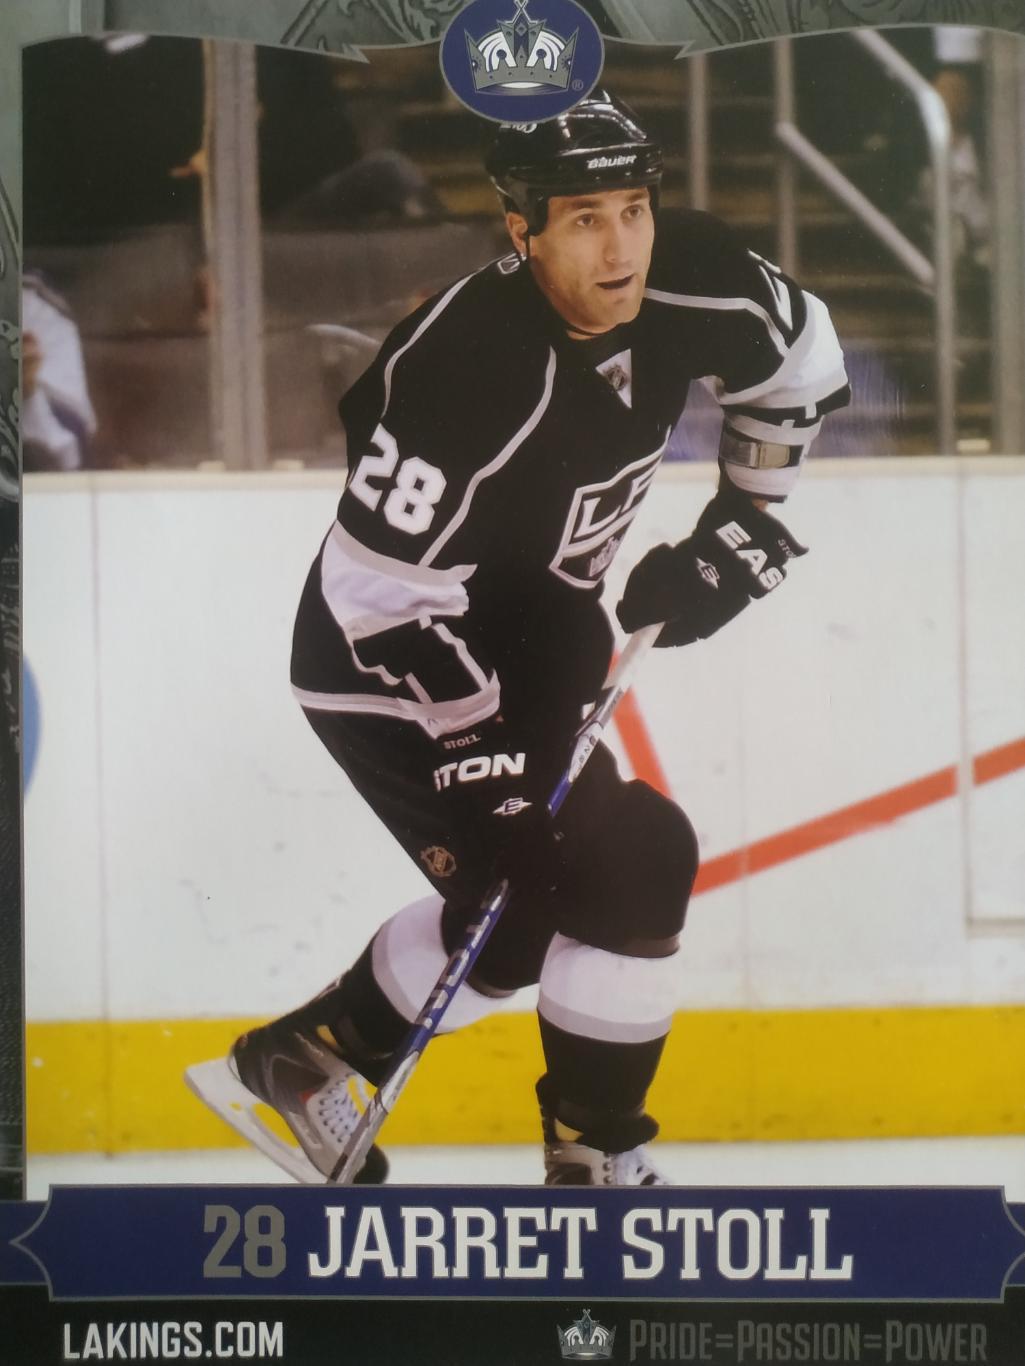 ХОККЕЙ ПОСТЕР ПЛАКАТ НХЛ NHL 2010 JARRET STOLL #28 POSTER ФОРМАТ А4